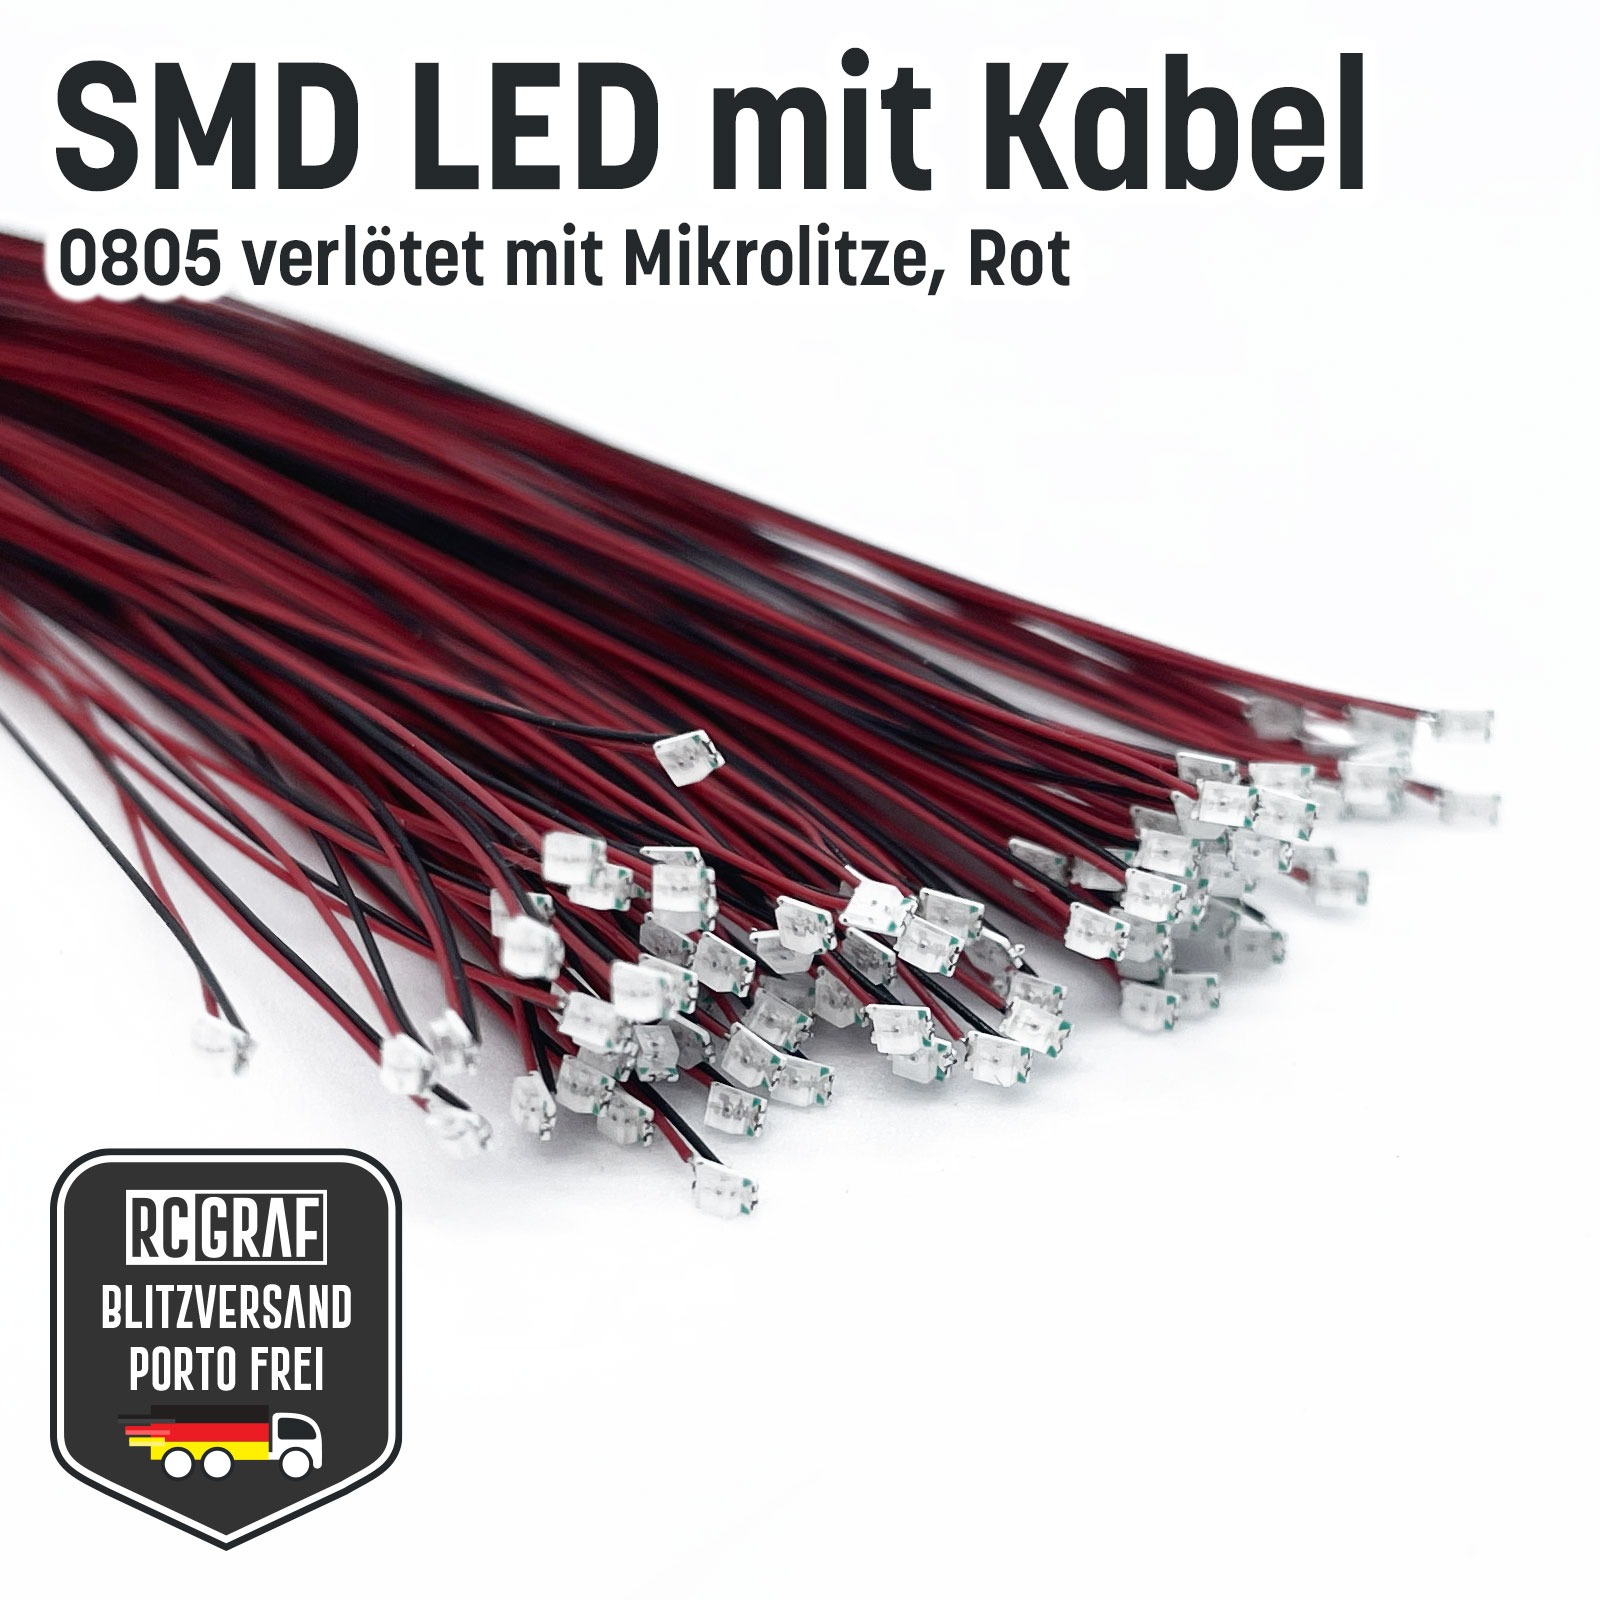 SMD LED 0805 Microlitze 30cm verlötet 6